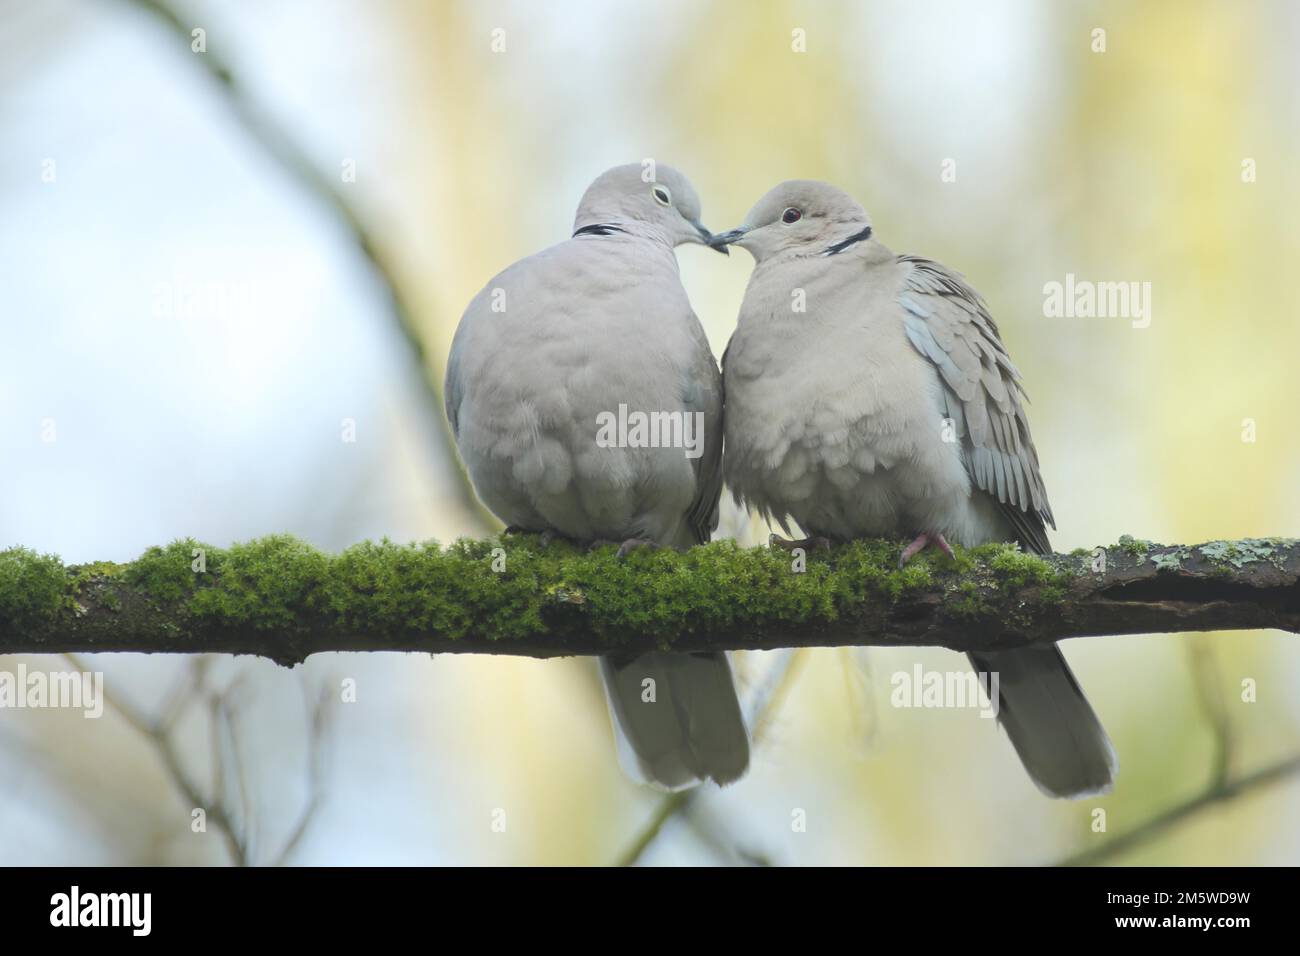 Une paire de colombes eurasiennes (Streptopelia decaocto) pendant la cour dans le jeu d'amour, d'émotion, de cuddling, de cuddling, d'affection, proximité Banque D'Images